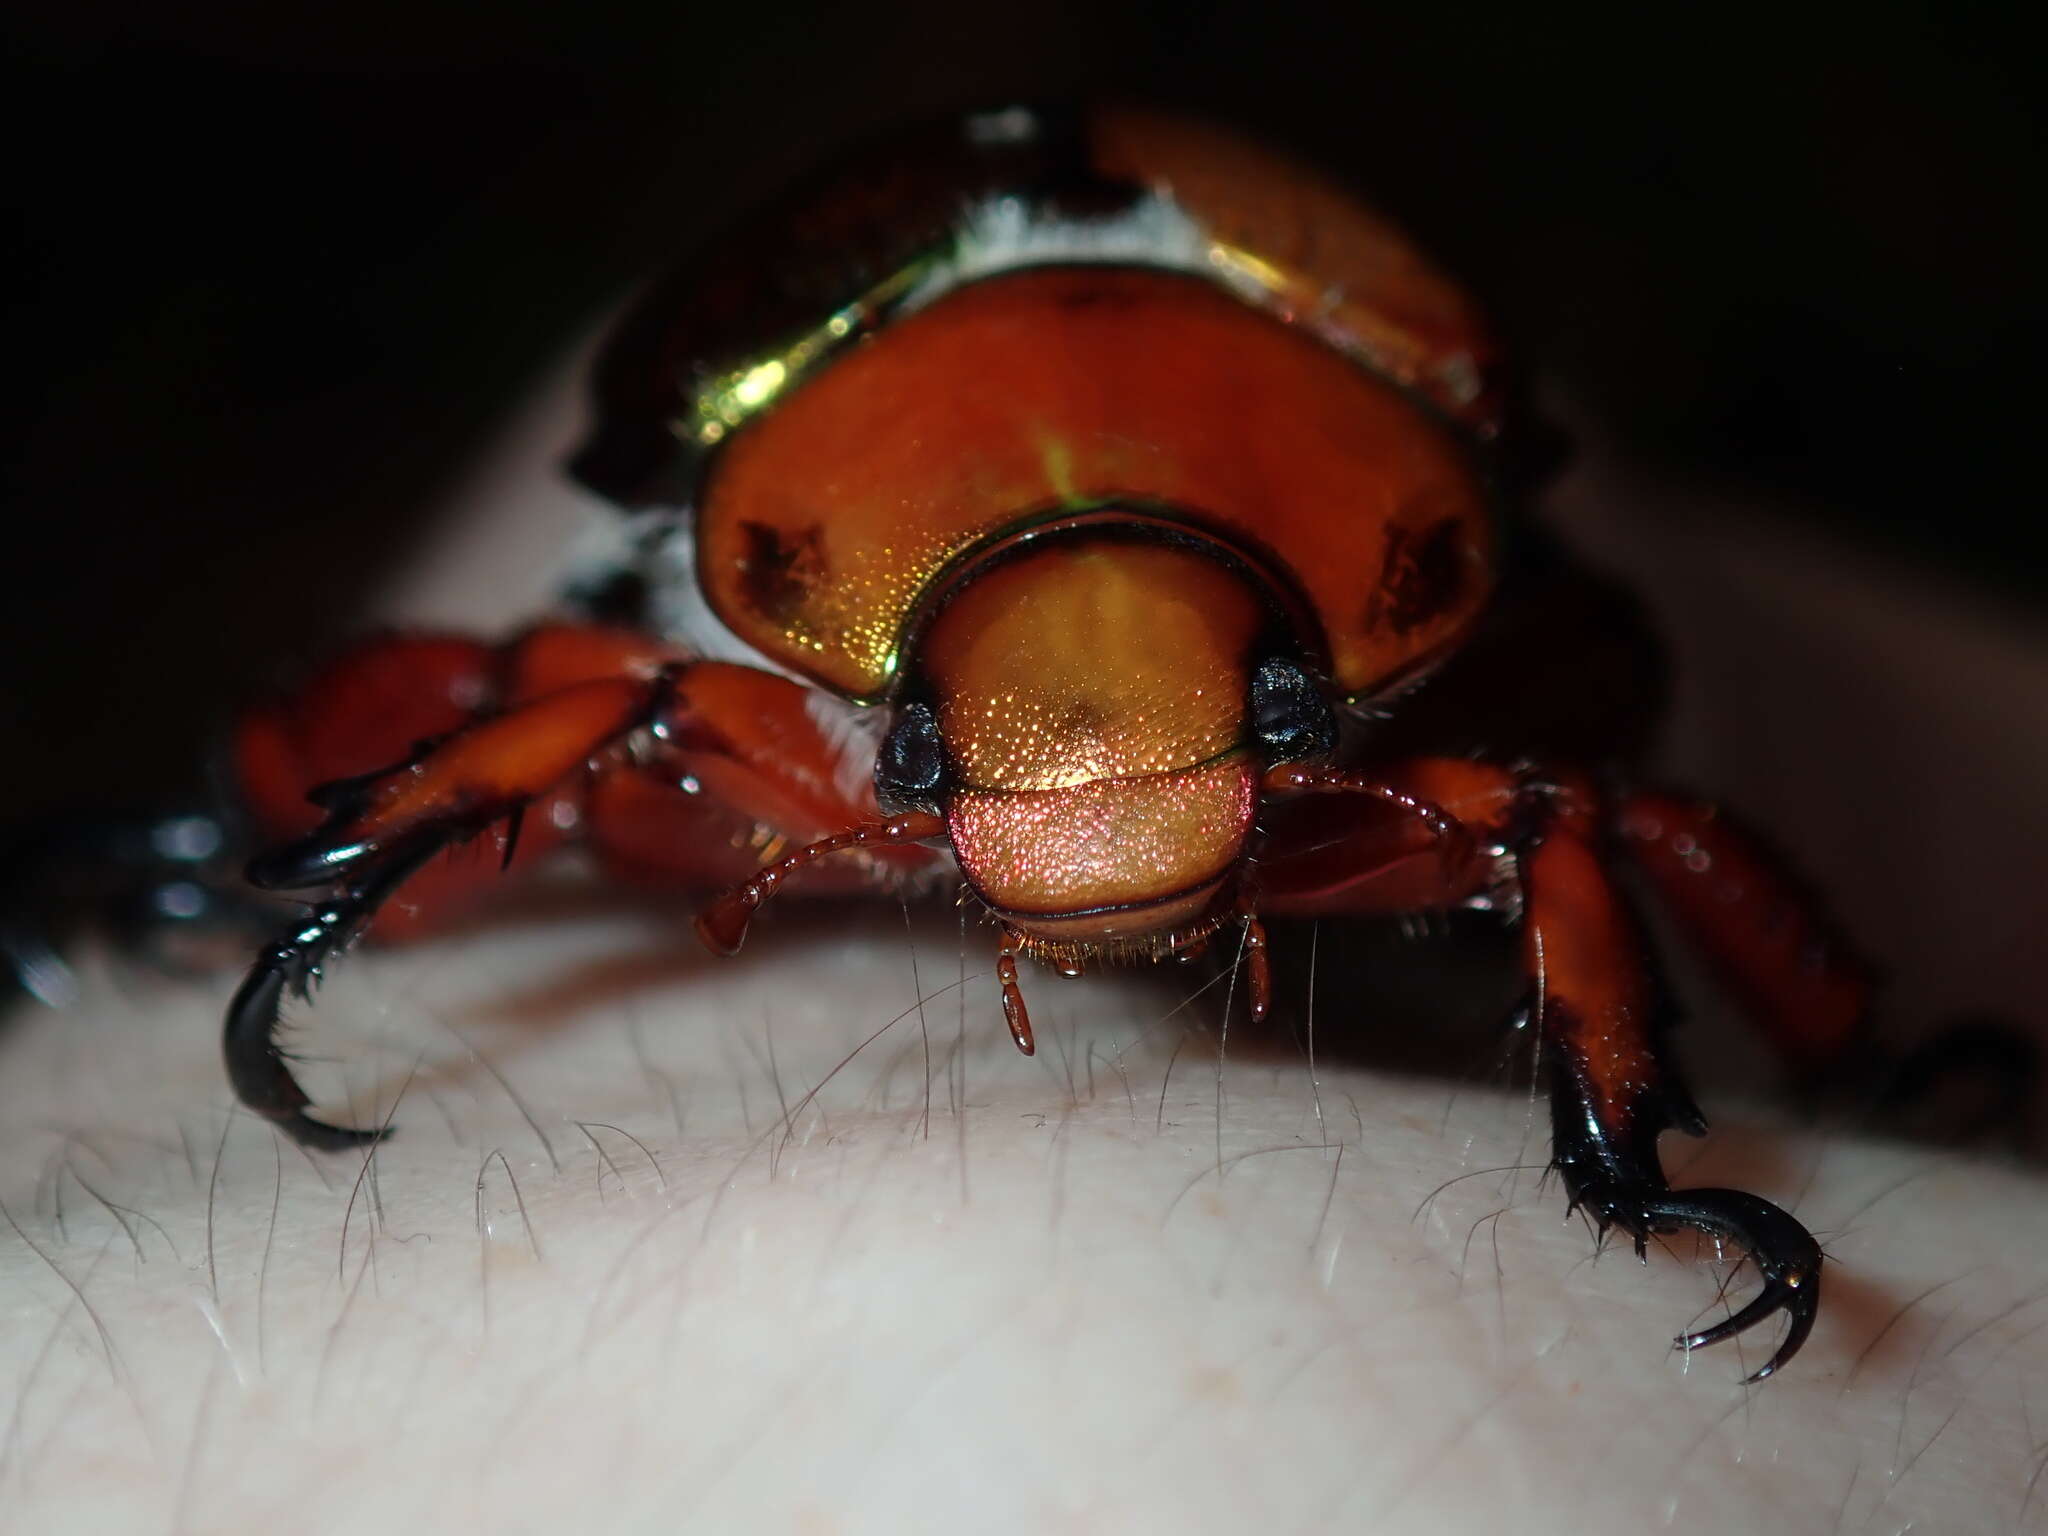 Image of King Beetle